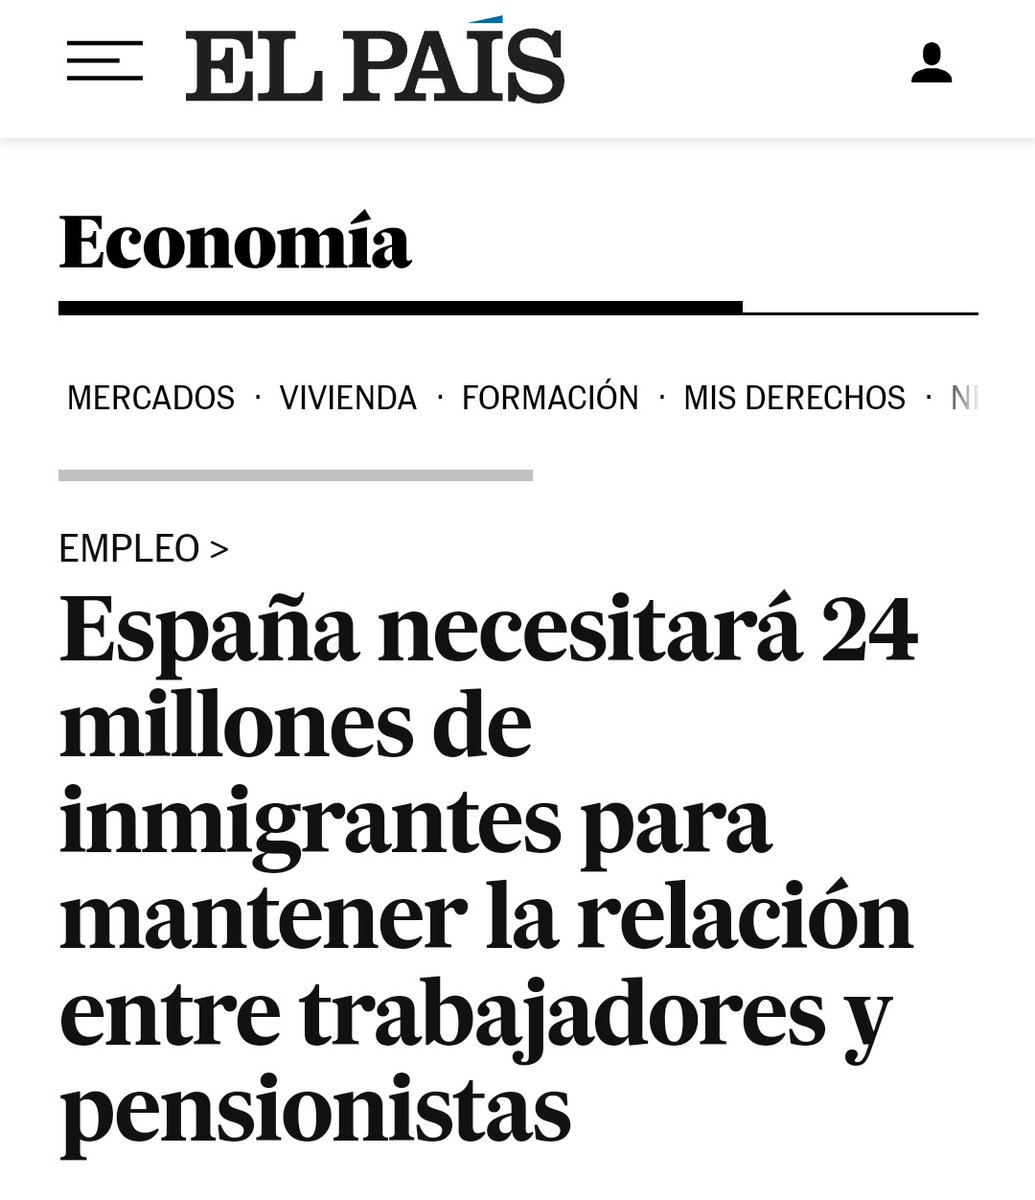 El govern de l'estat espanyol diu que farà falta 24 milions d'immigrants fins a 2050. A milió per any. No només és inassumible sinó que la majoria dels que venen no aporten res i a sobre reben multitud d'ajudes econòmiques. El que necessitem són deportacions. Què en penseu?